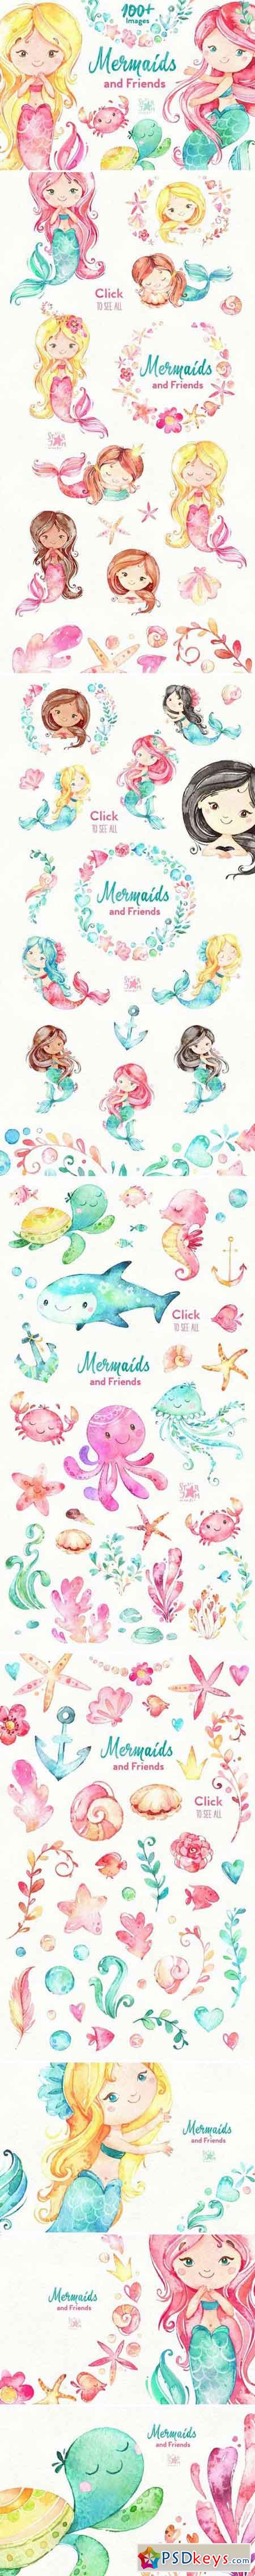 Mermaids & Friends Underwater world 1588358